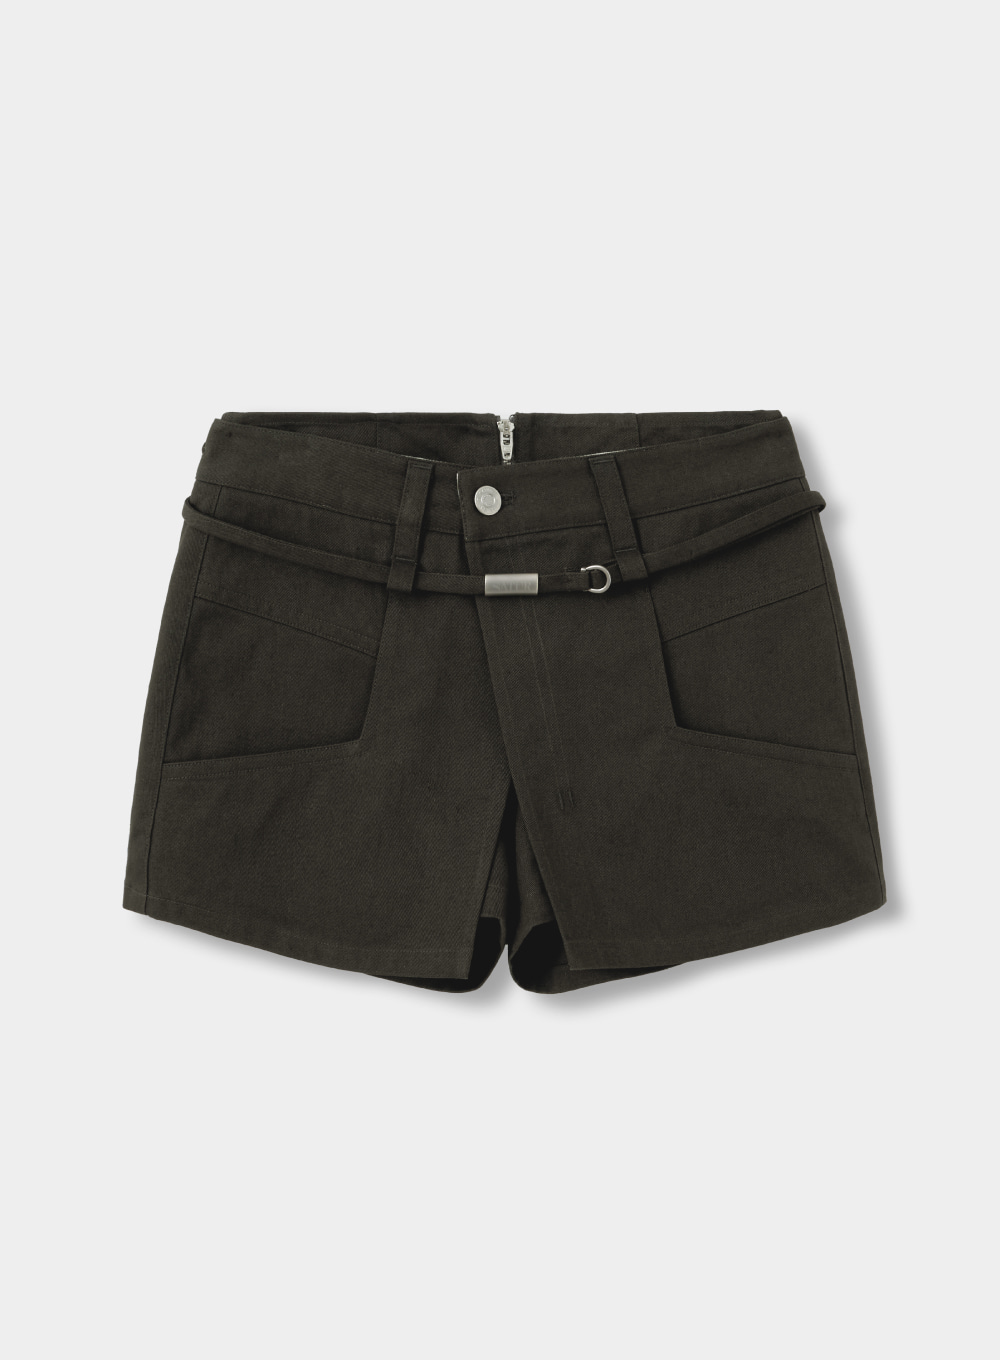 [2월 5일 예약배송]Pitton Cotton Skirt Pants - Shadow Chacoal